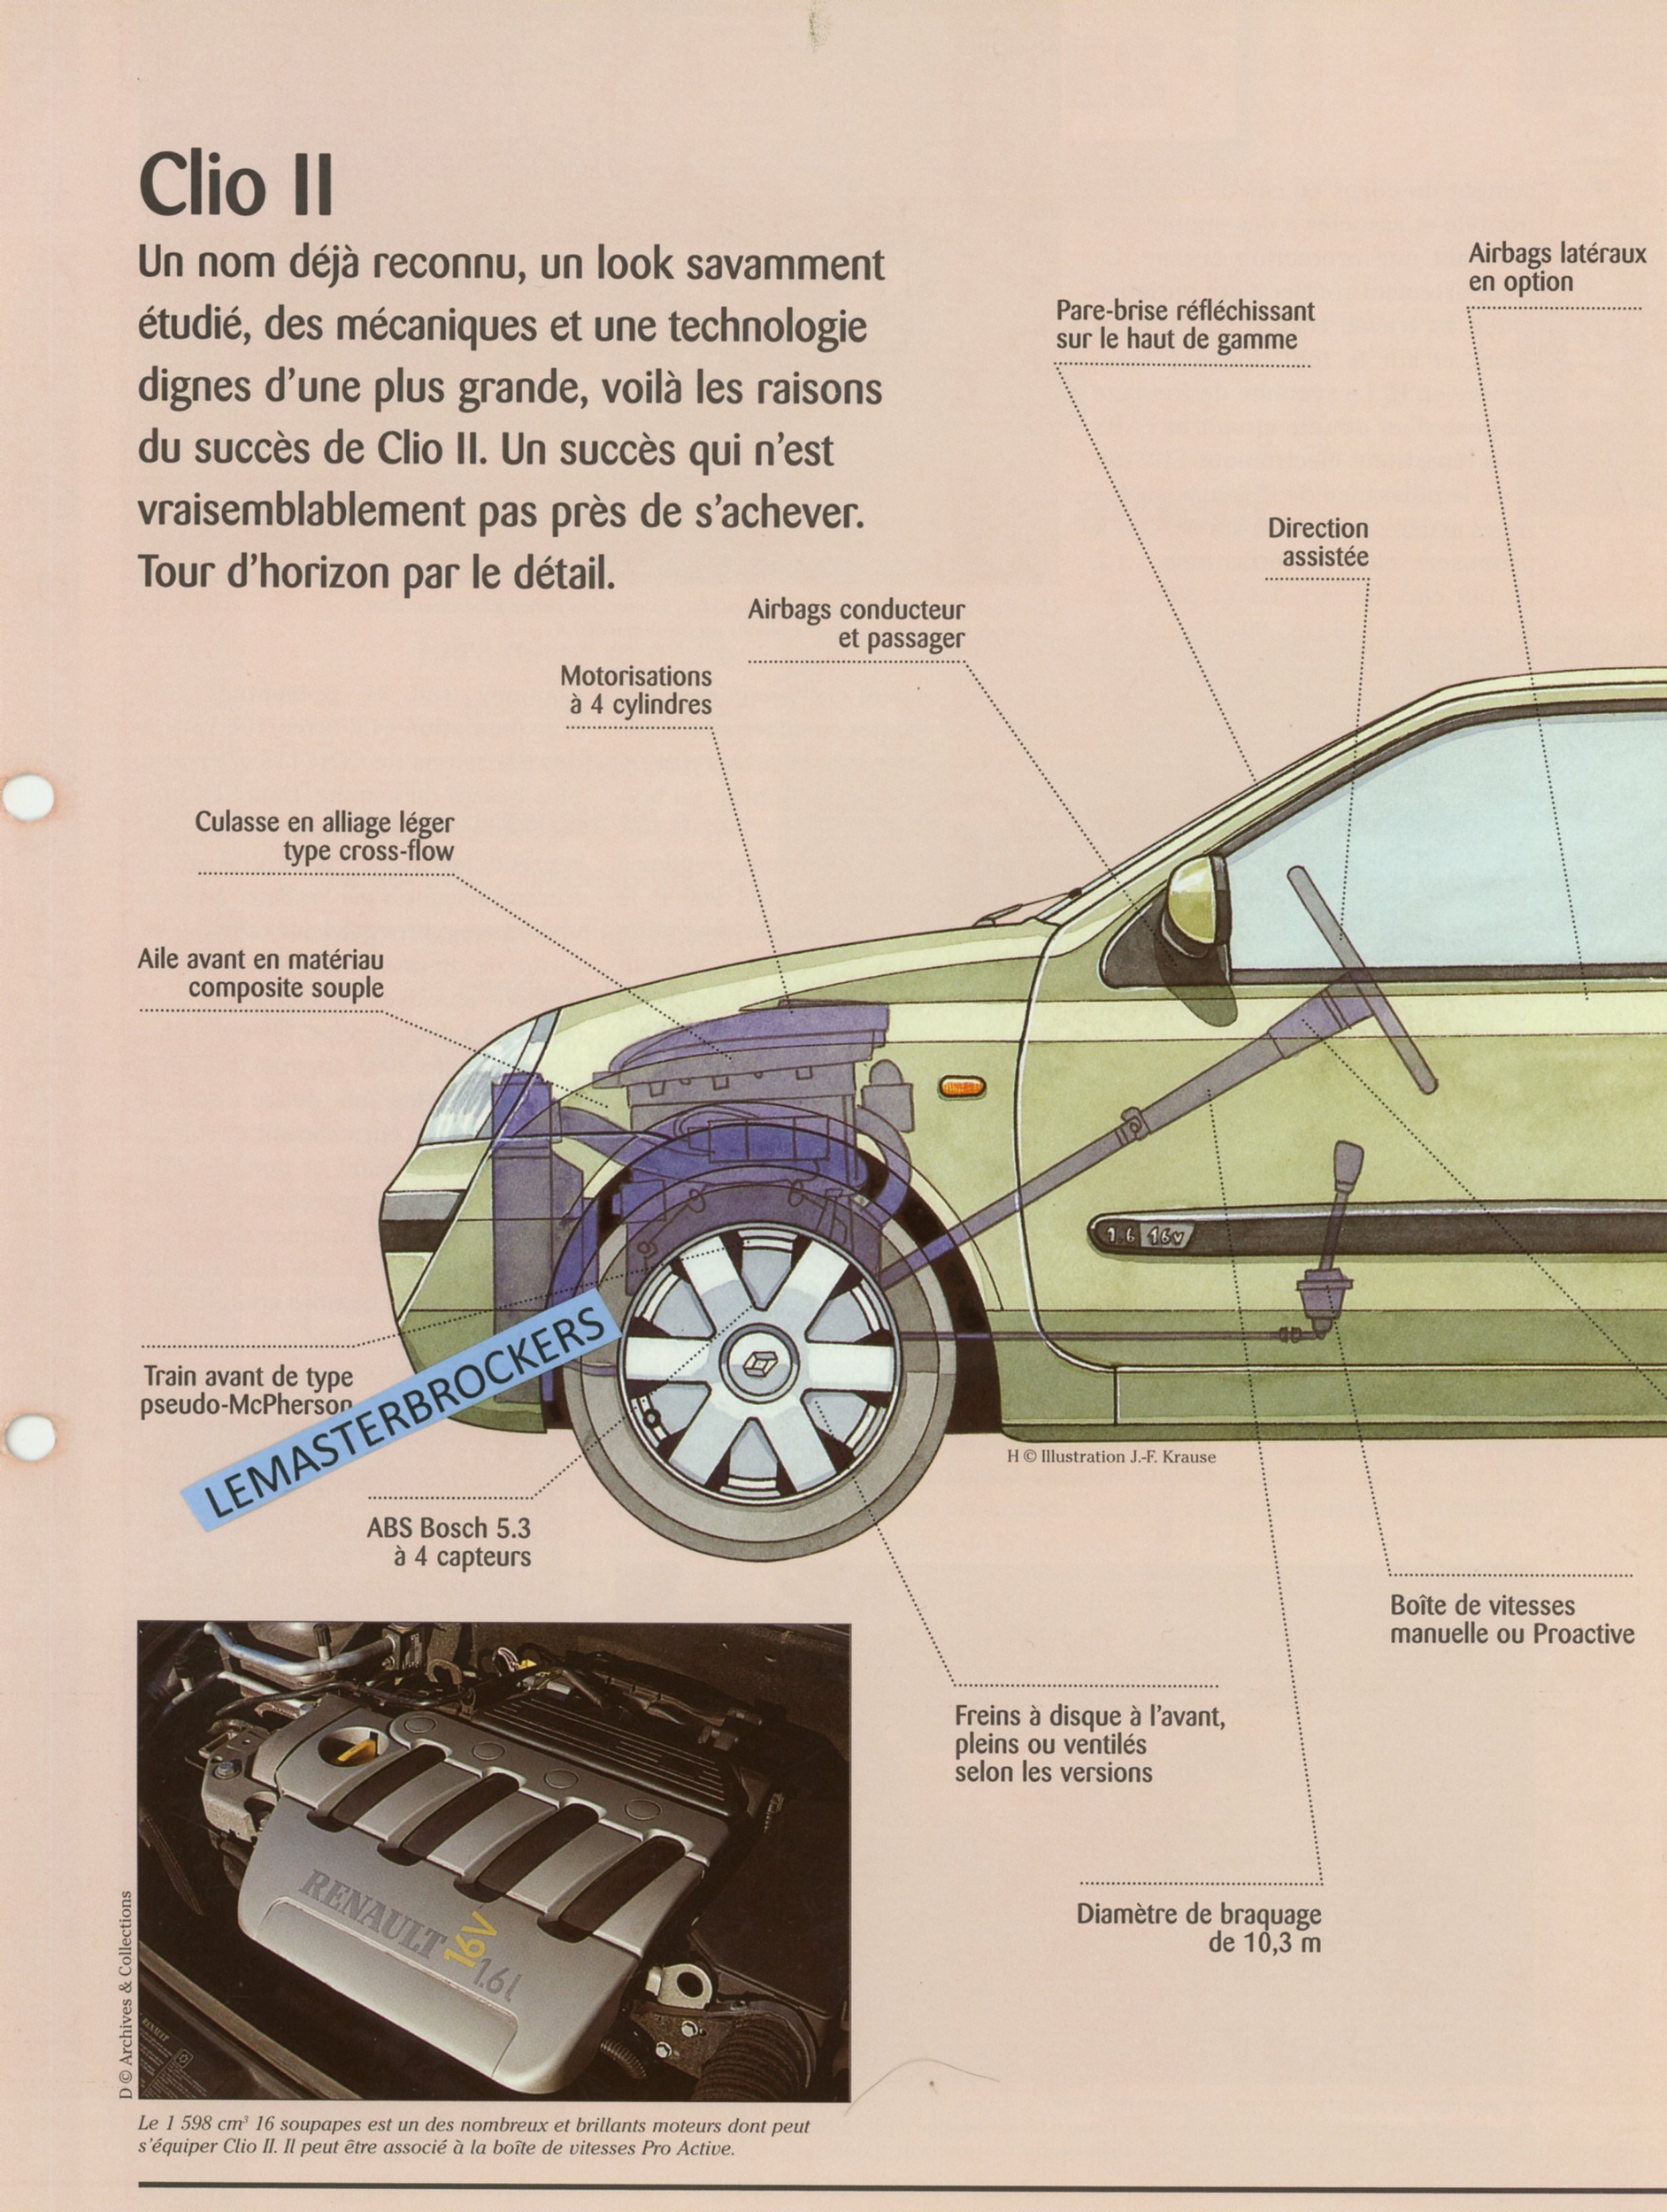 RENAULT-CLIO-2-Fiche-auto-lemasterbrockers-cars-HACHETTE-1998